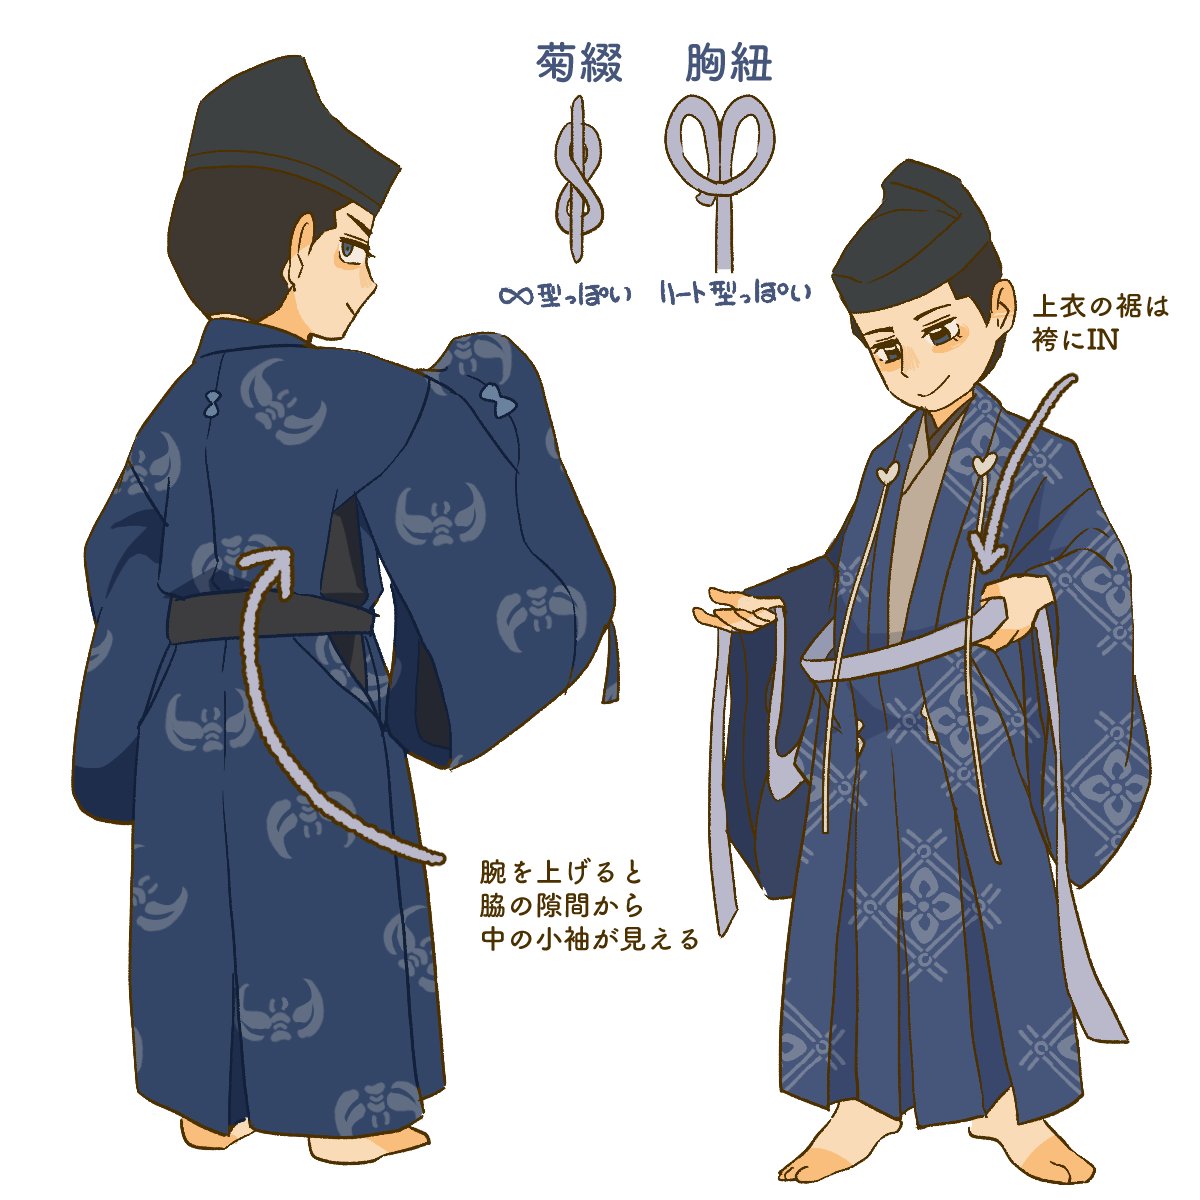 鎌倉武士で覚える装束のあれこれ